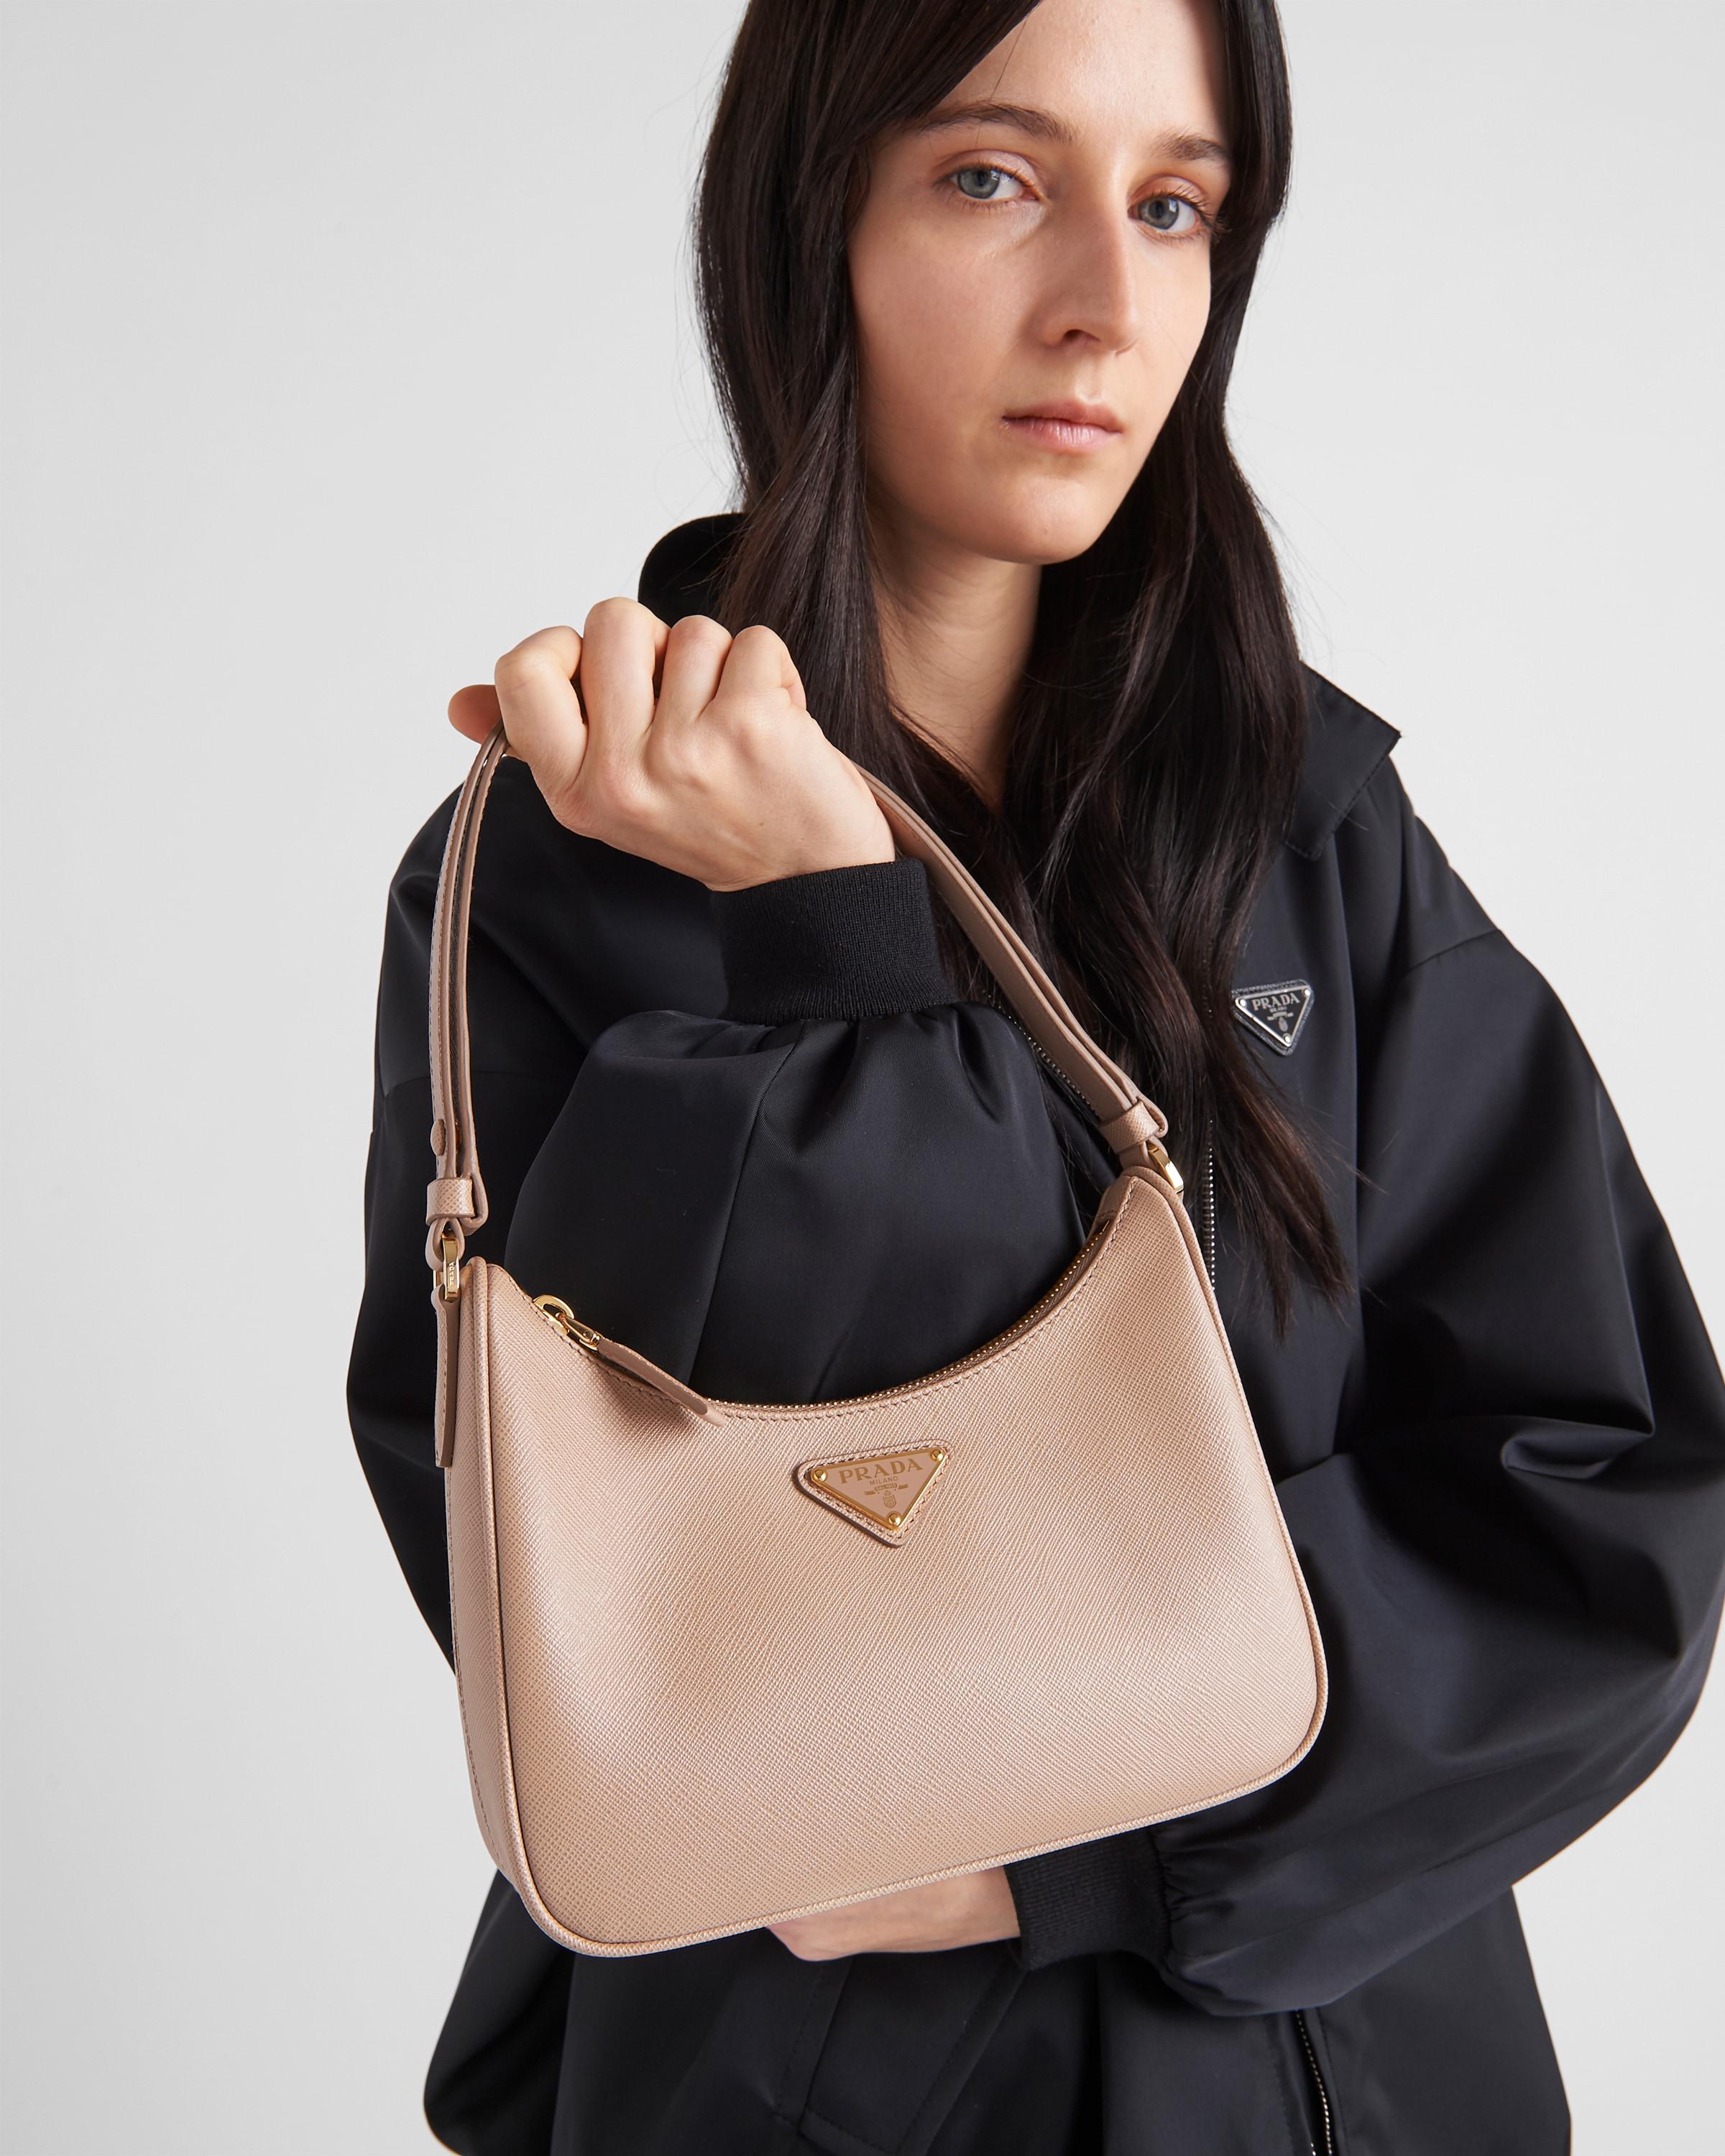 Prada Re-edition Saffiano Leather Mini Bag in White | Lyst